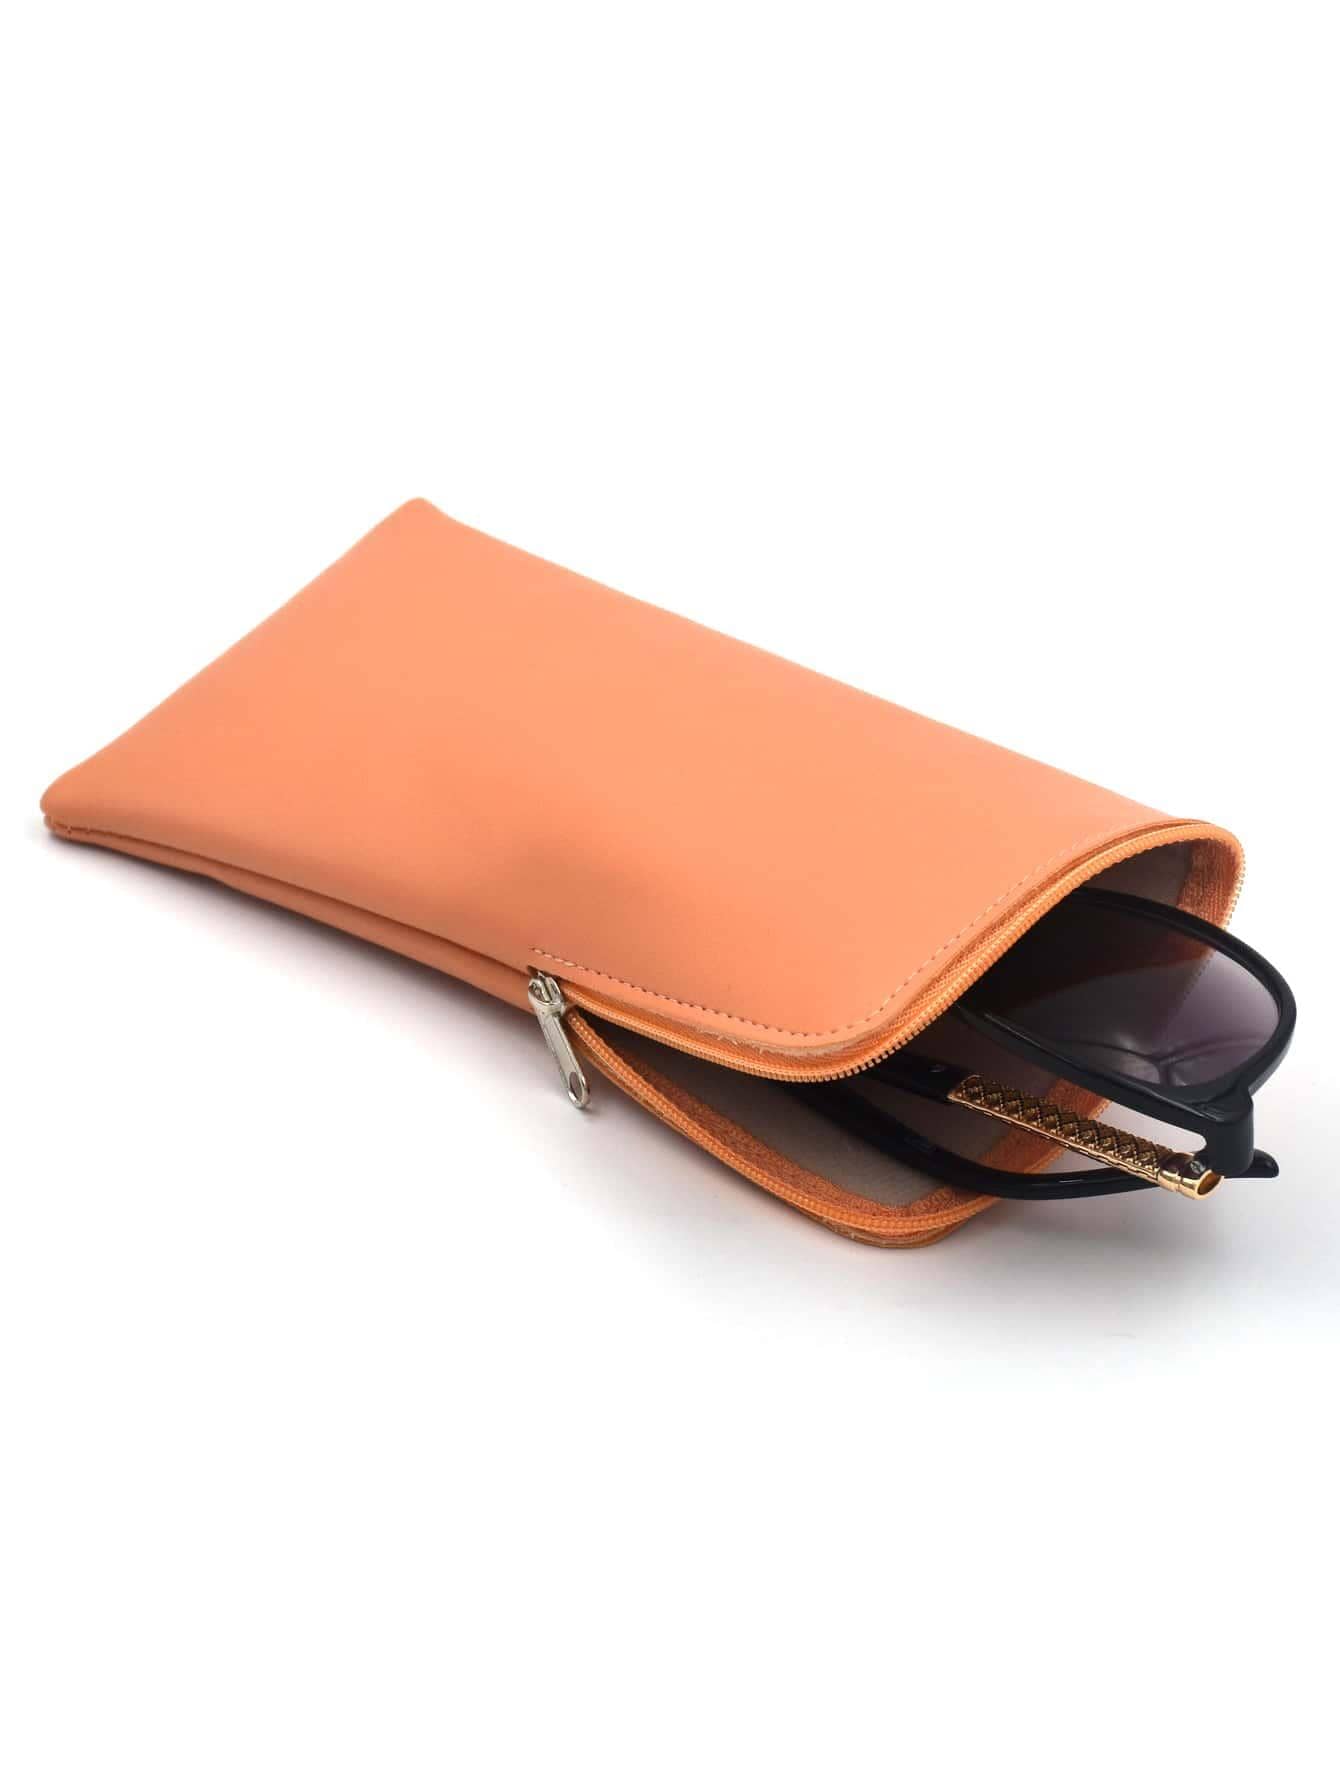 1 предмет из искусственной кожи, апельсин подвесная сумка для одежды одежды костюма пальто пылезащитный чехол сумка для домашнего хранения чехол сумка органайзер шкаф подвесн